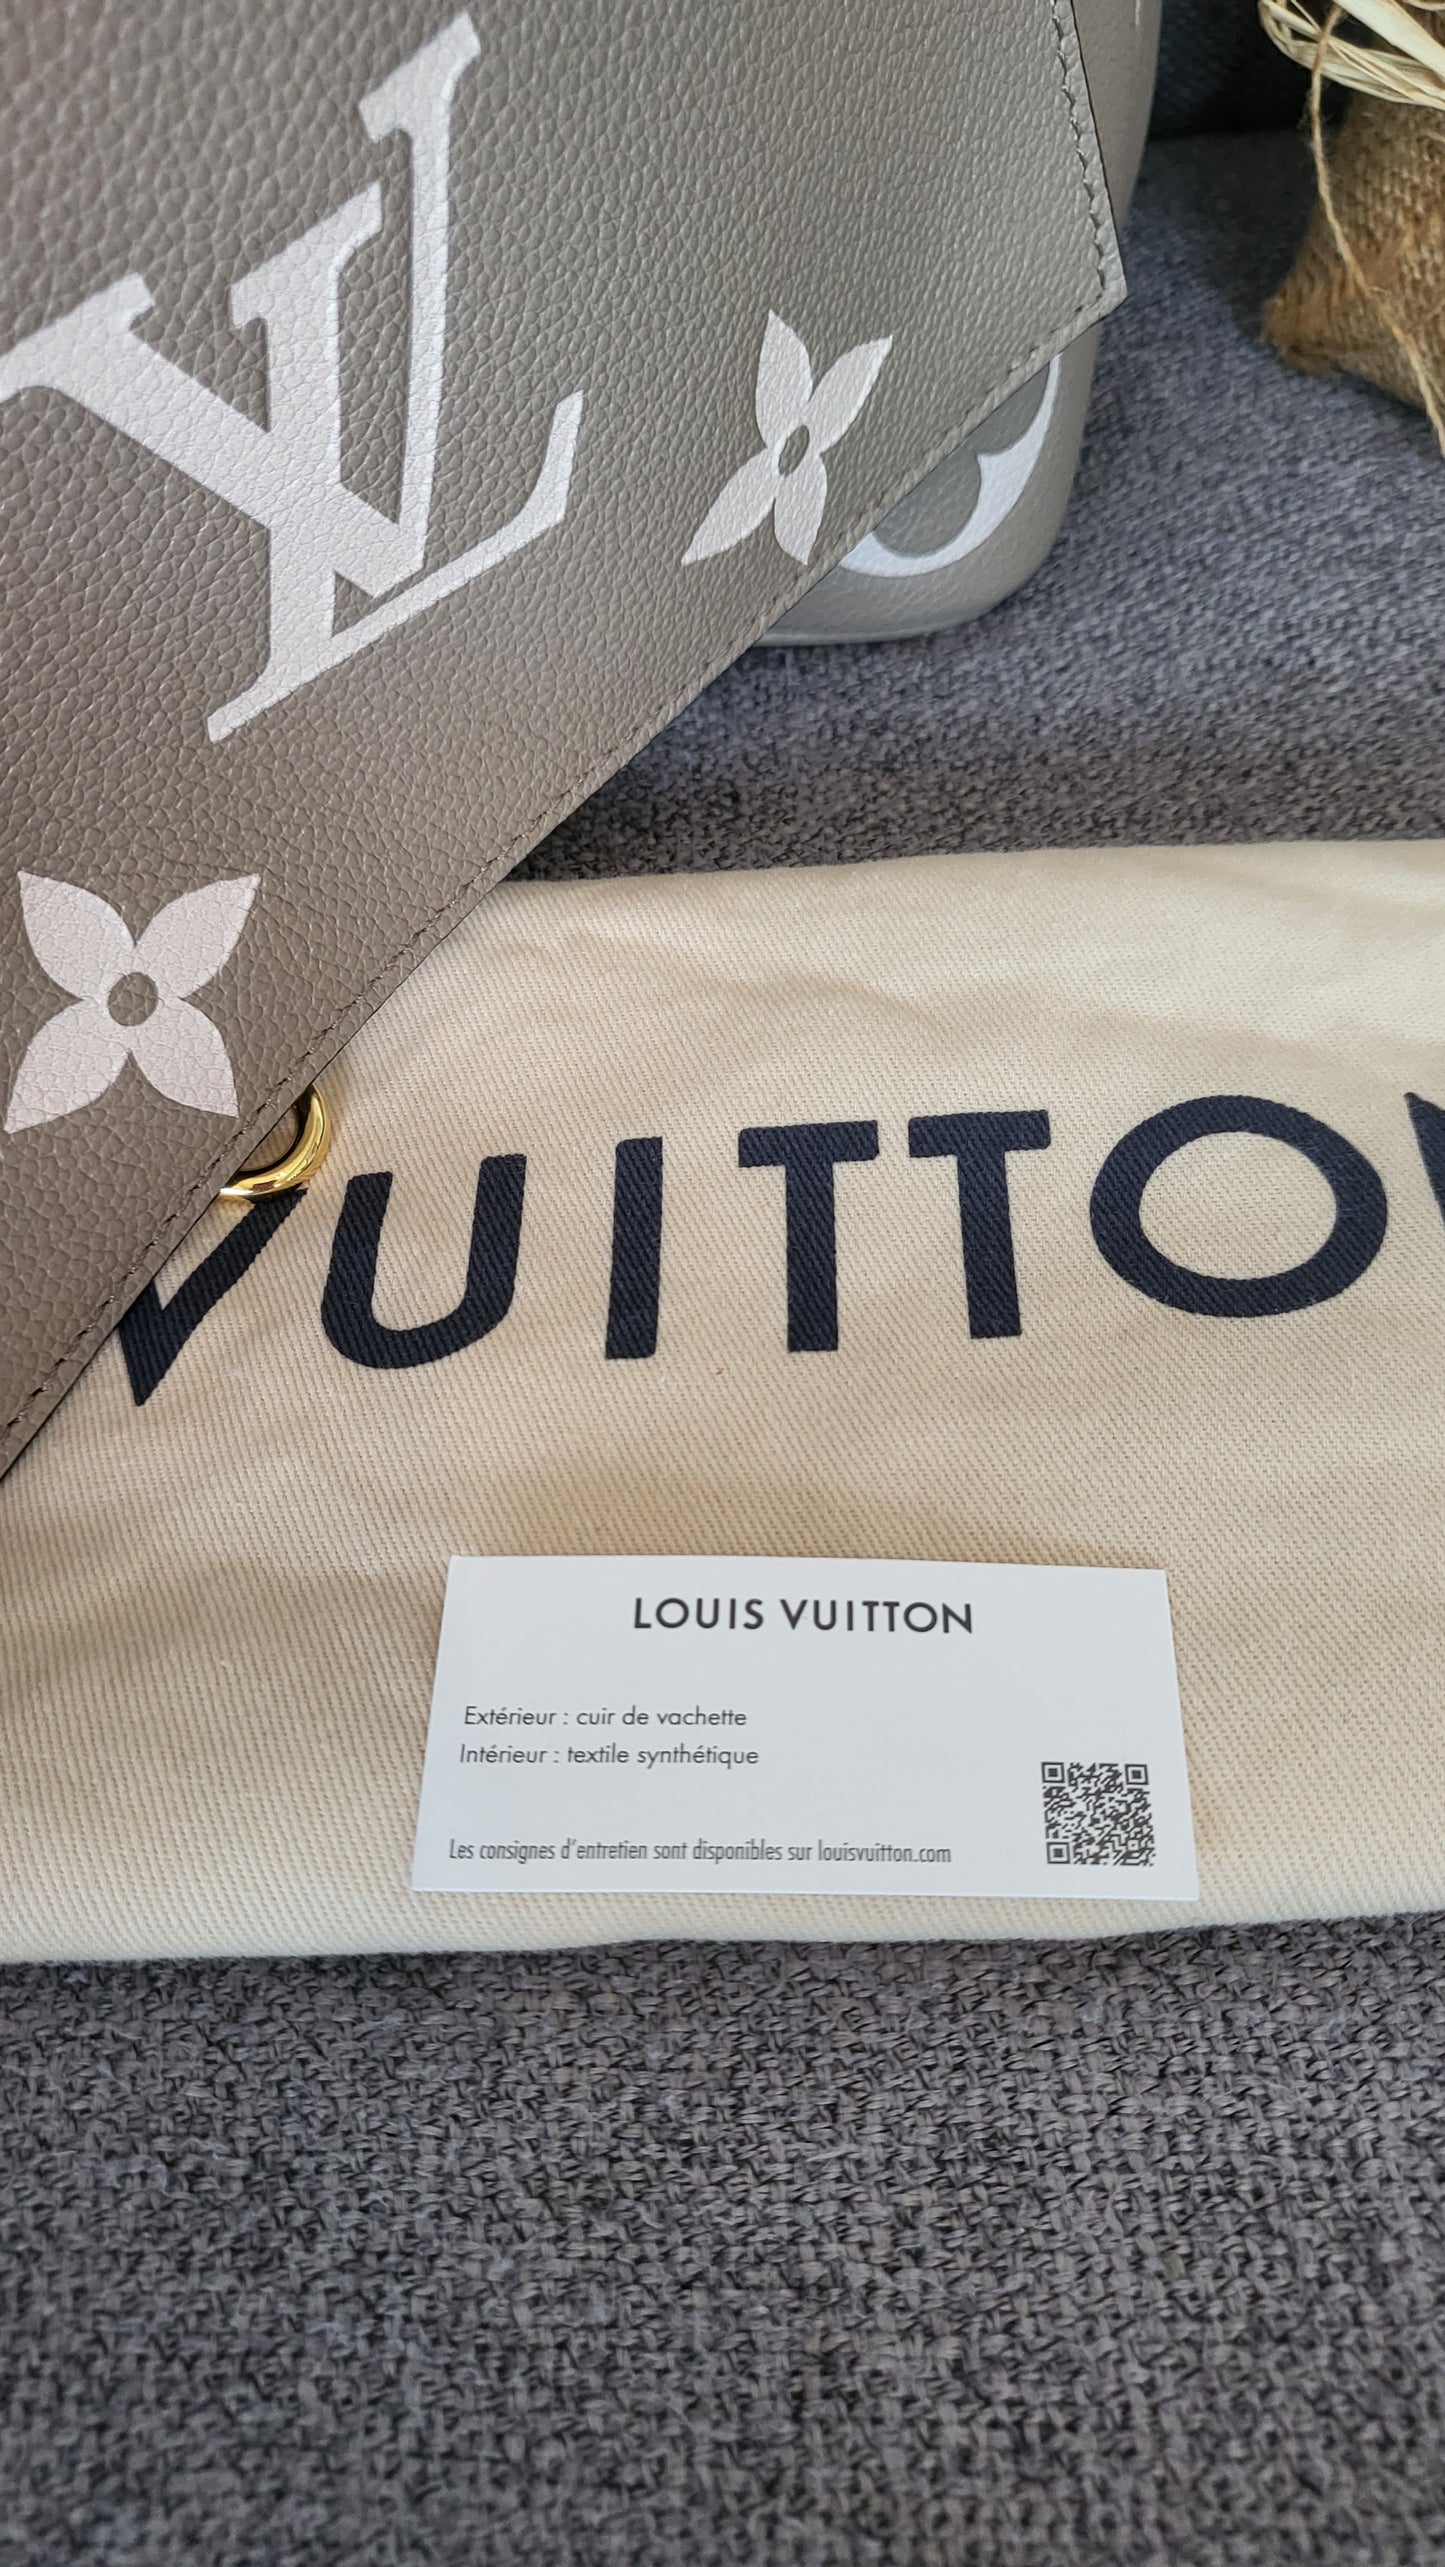 Louis Vuitton Neonoe Turtle Dove